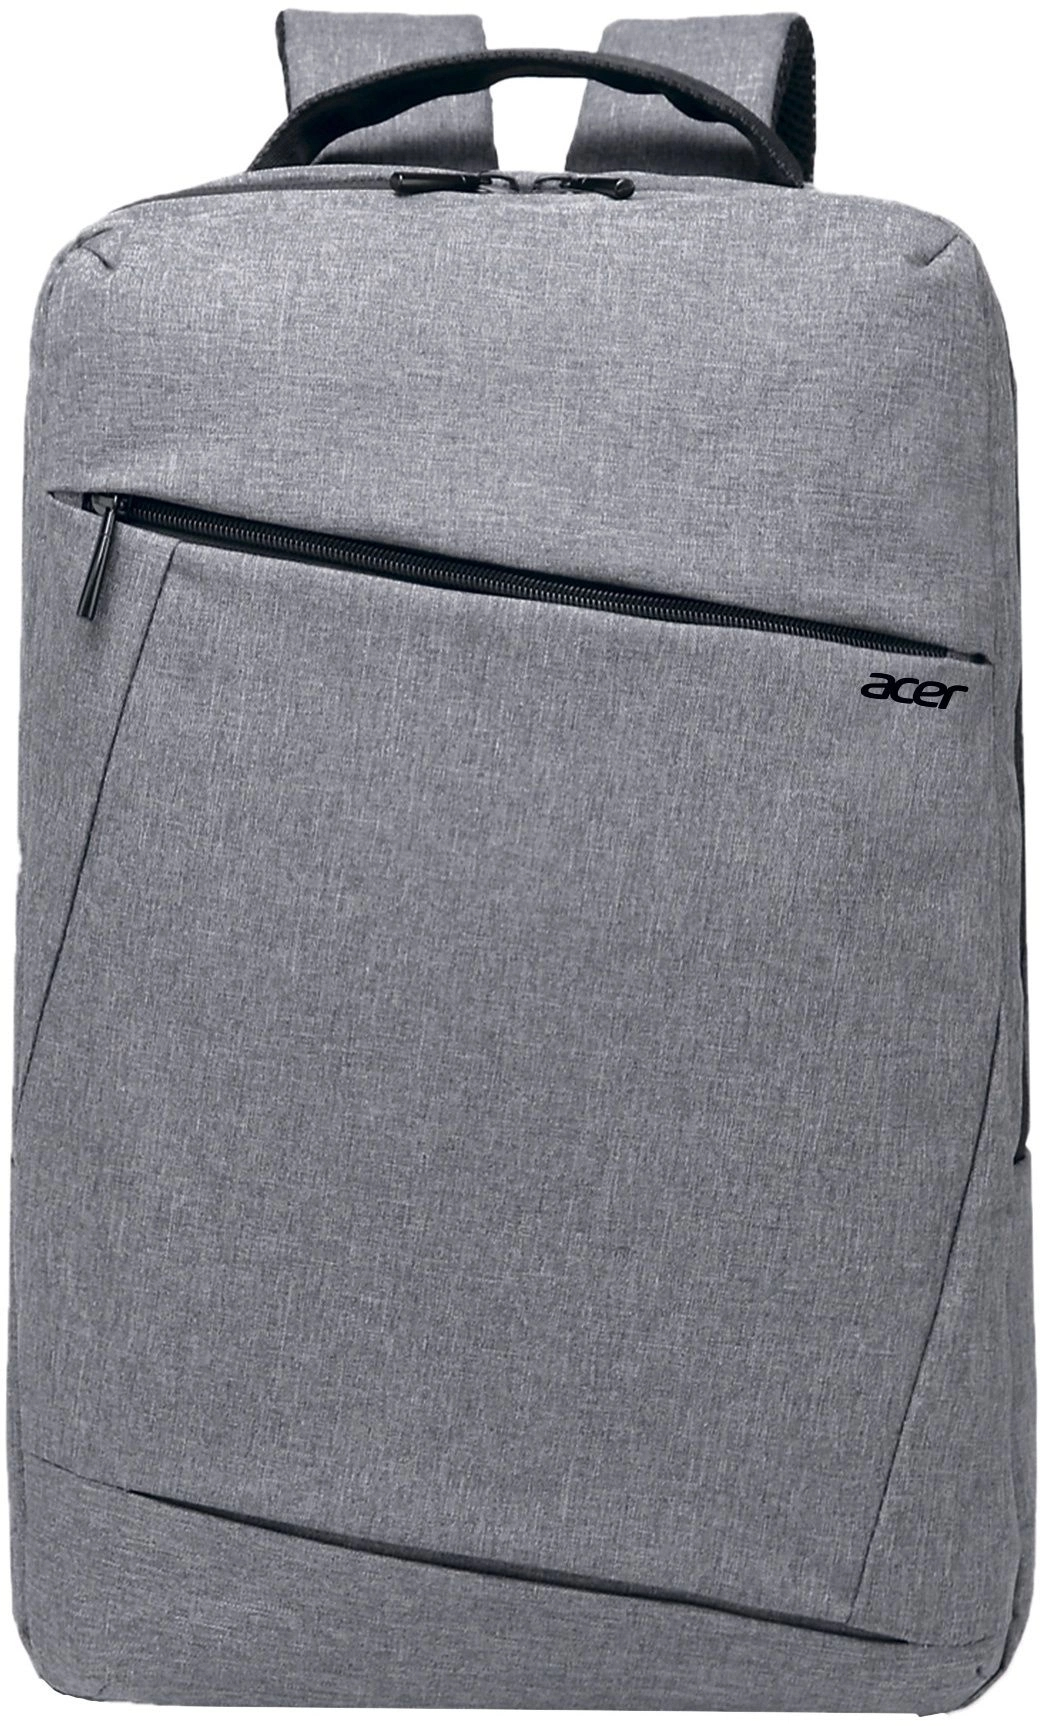 Рюкзак Acer OBG205 15.6" серый нейлон, ZL.BAGEE.005